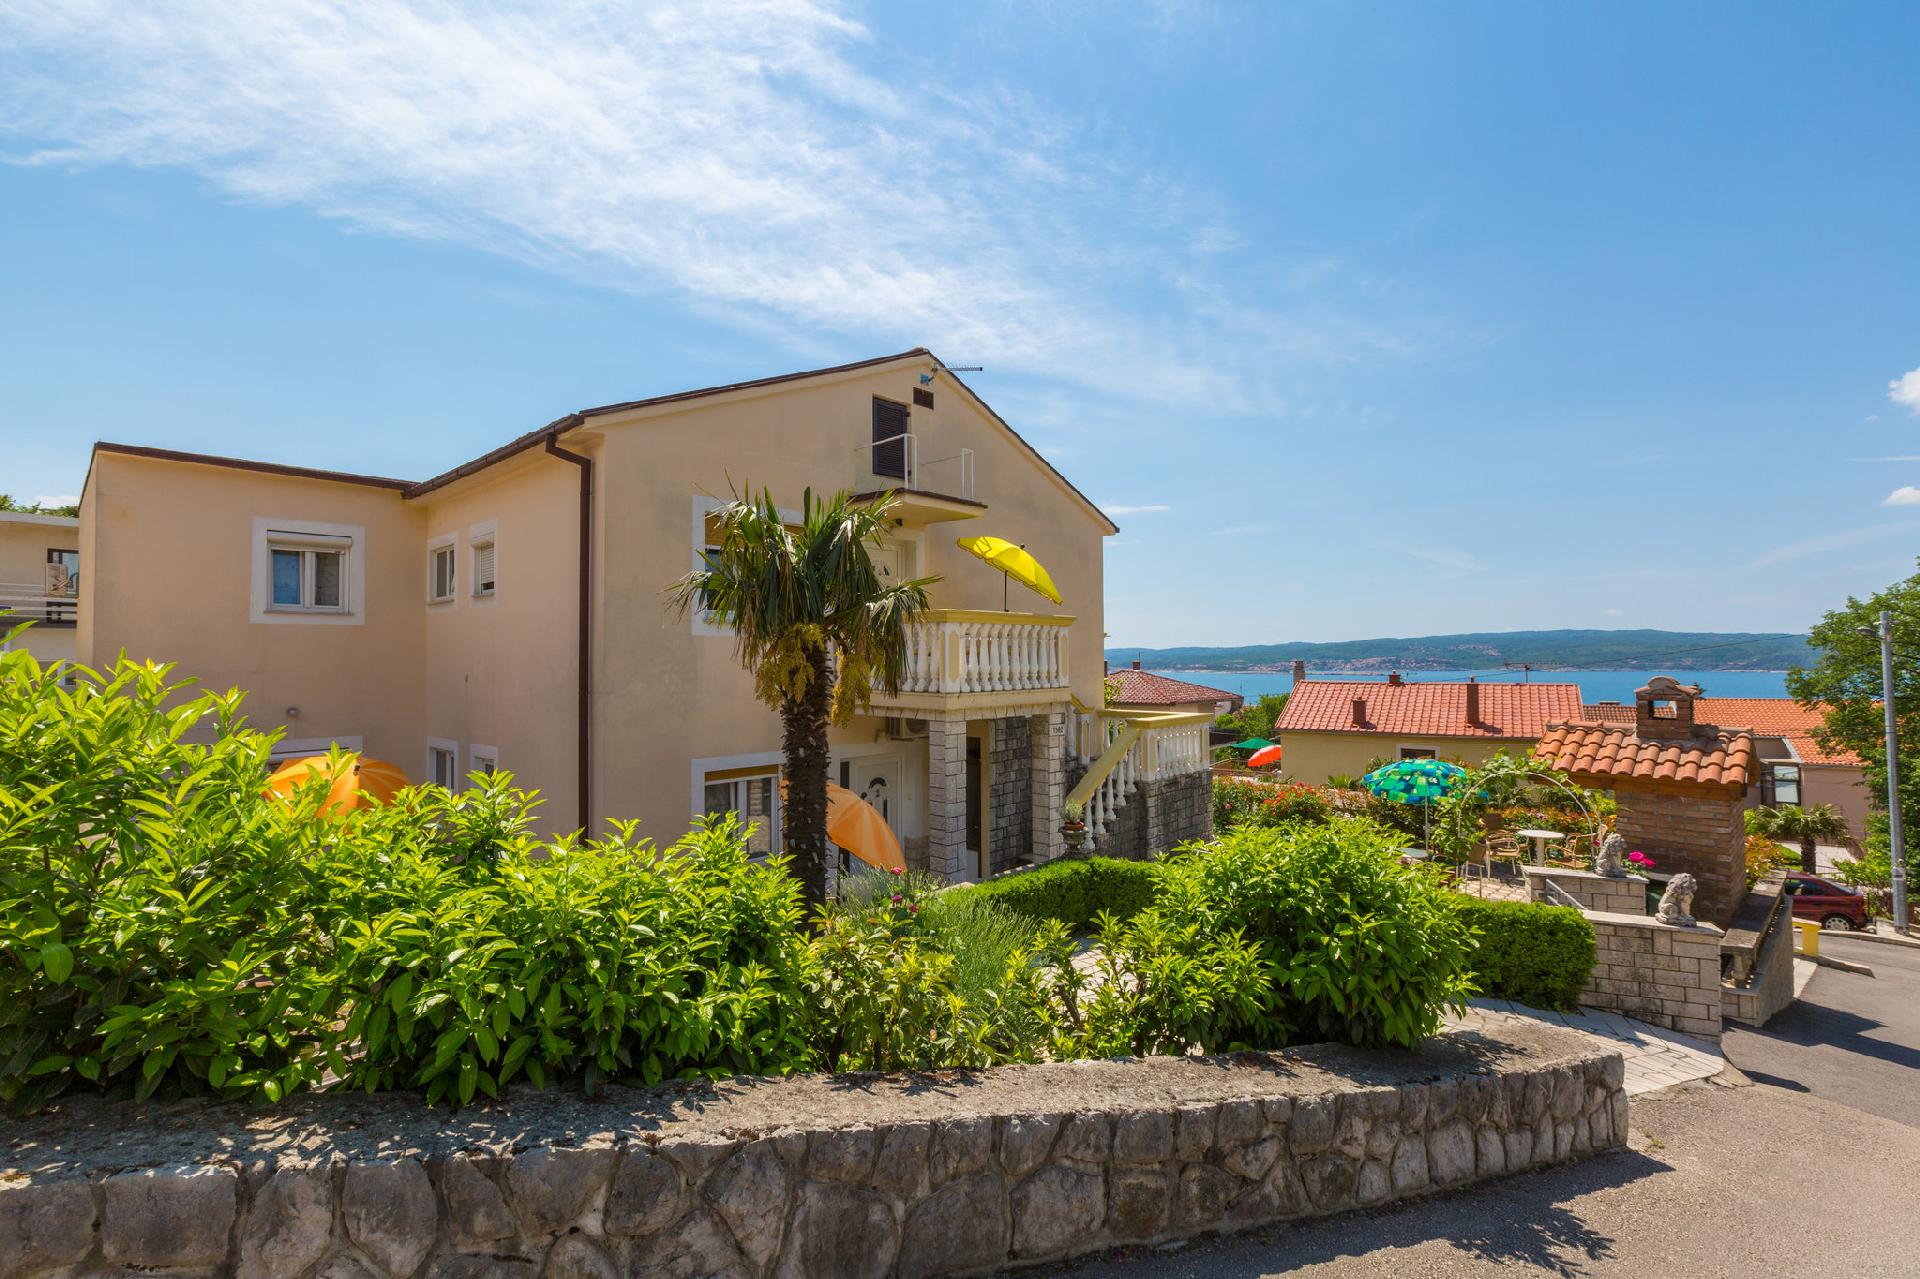 Ferienwohnung für 3 Personen ca. 48 m² i  in Kroatien